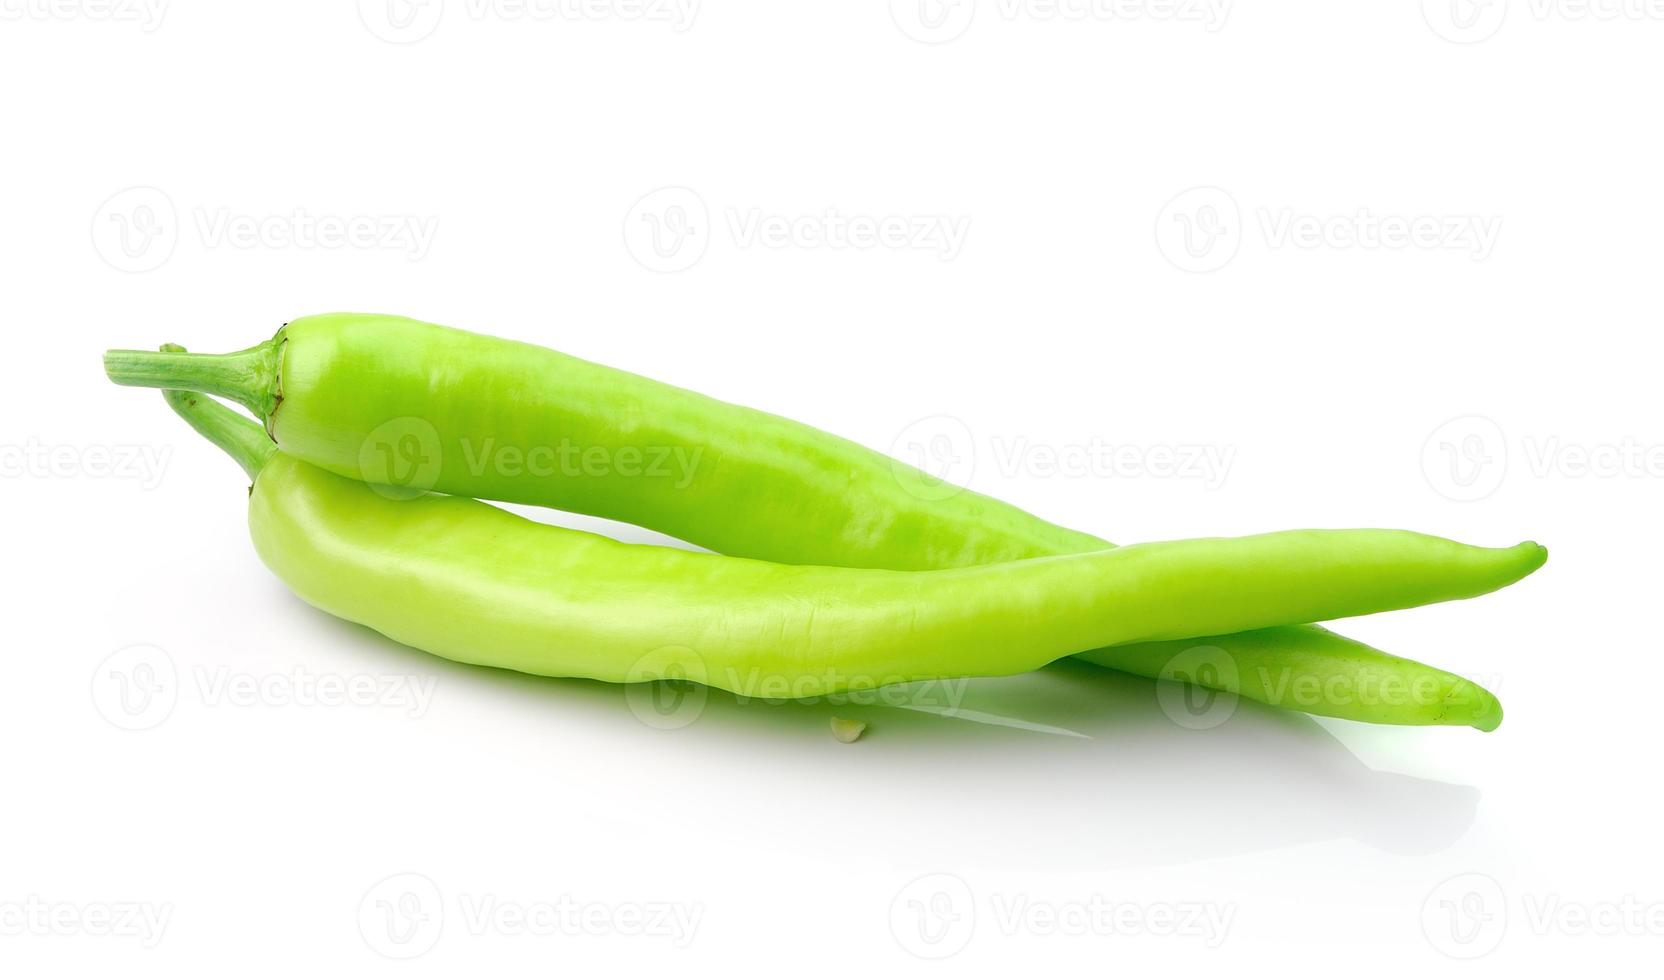 groene hete chili peper op wit foto